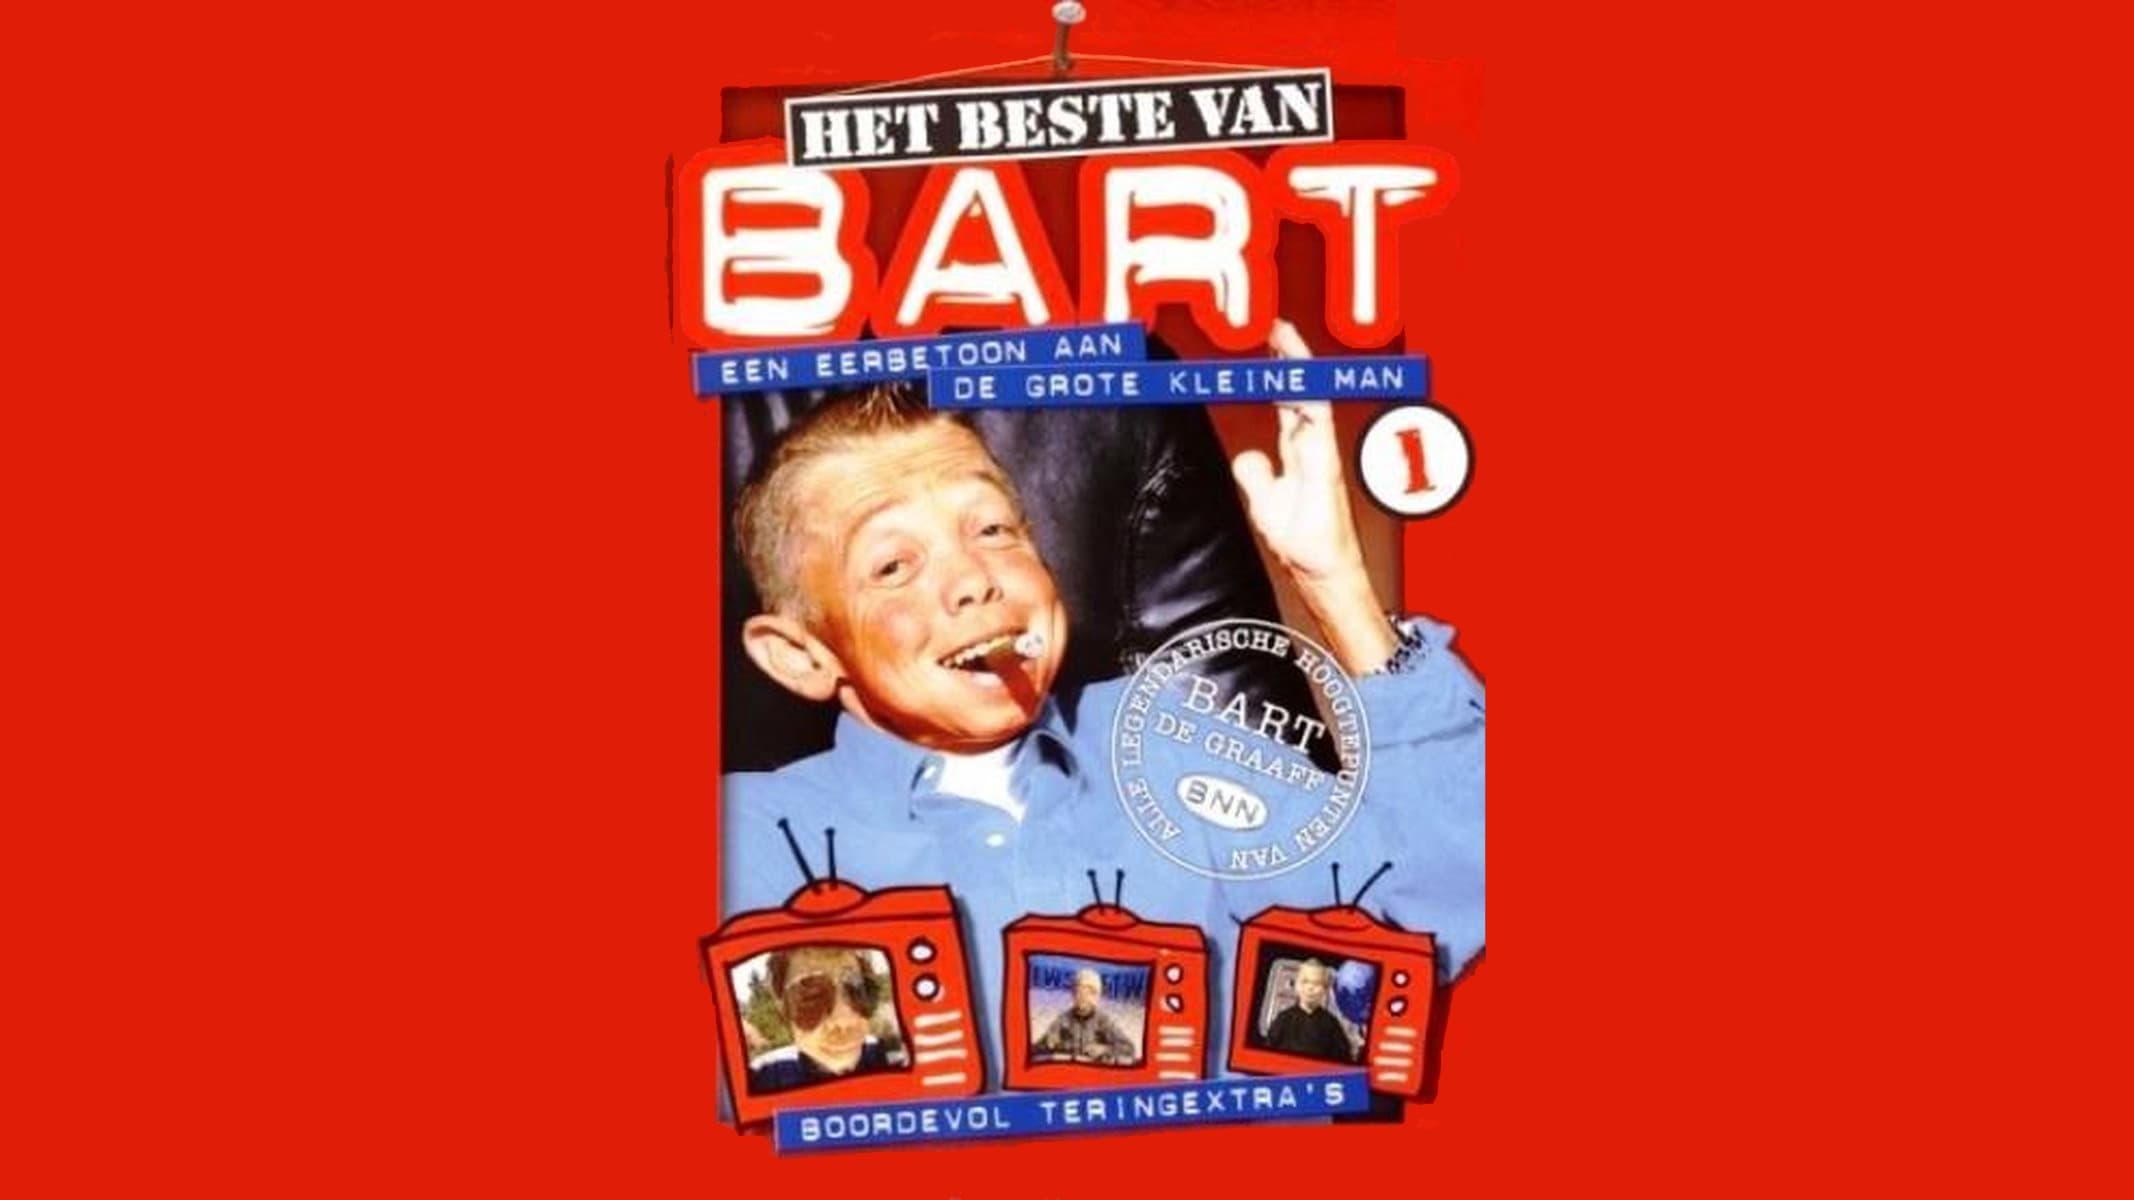 Het beste van Bart (2003)